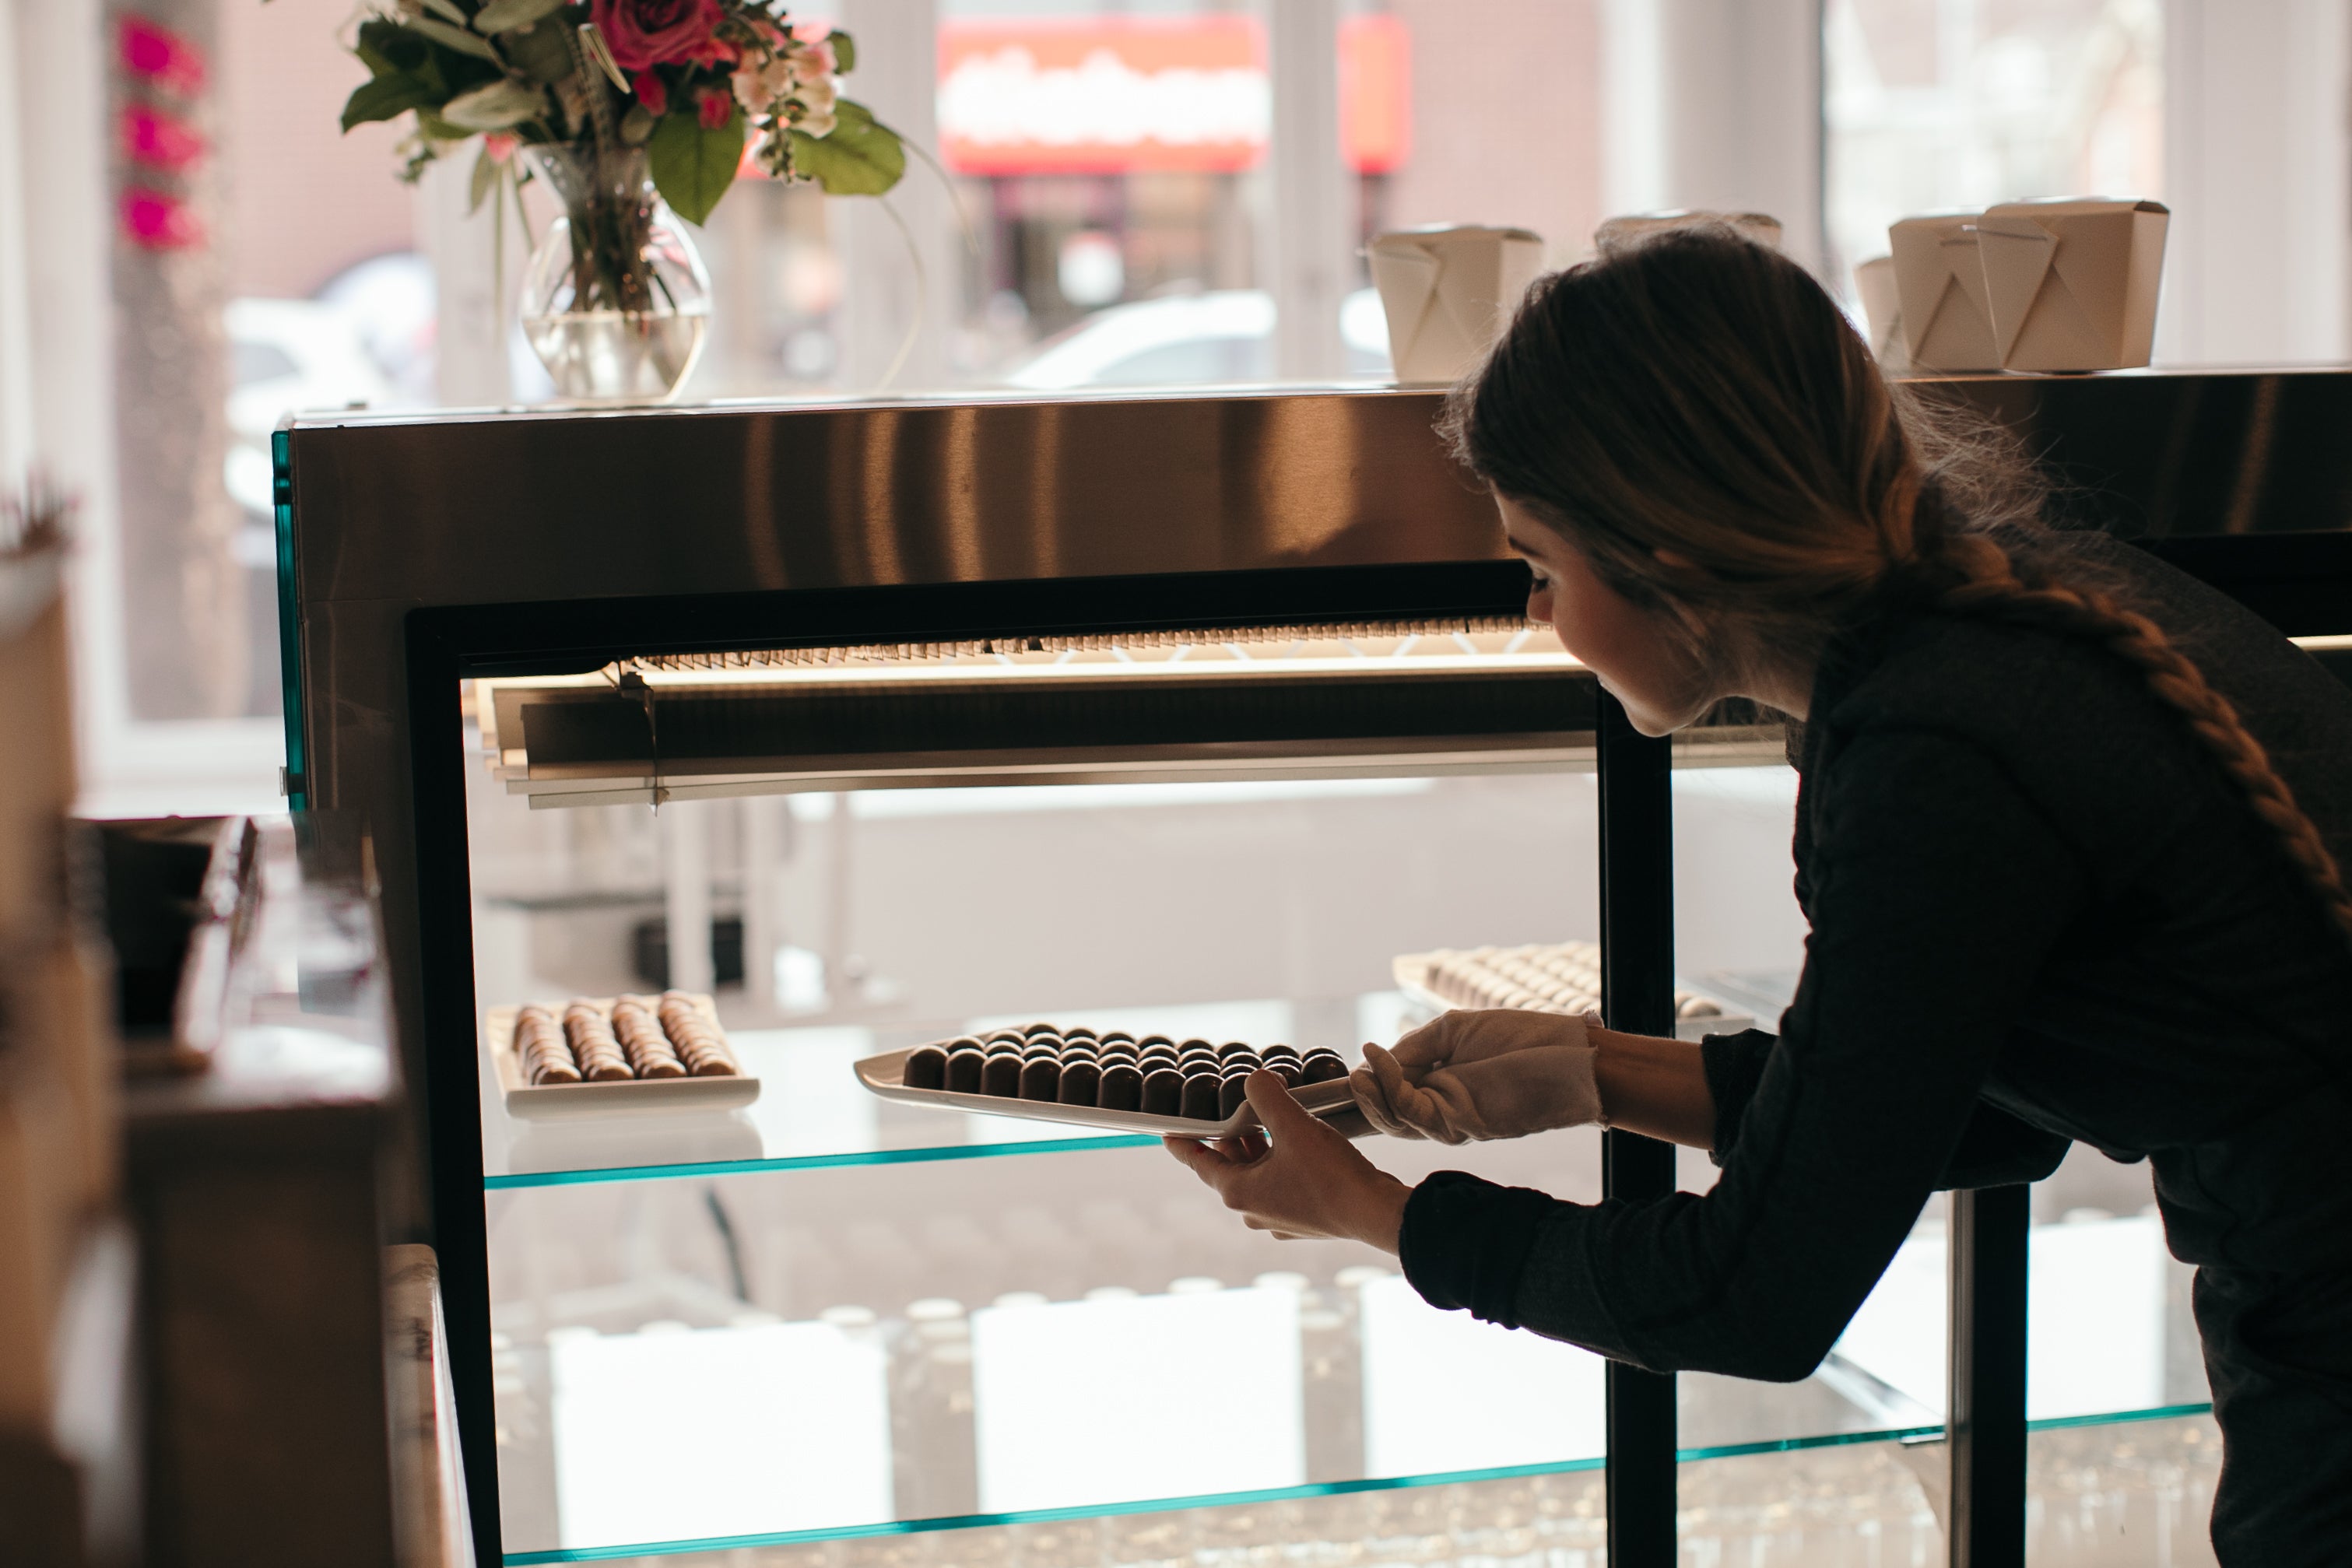 Alicja Buchowicz rifornisce un espositore in vetro con cioccolatini freschi